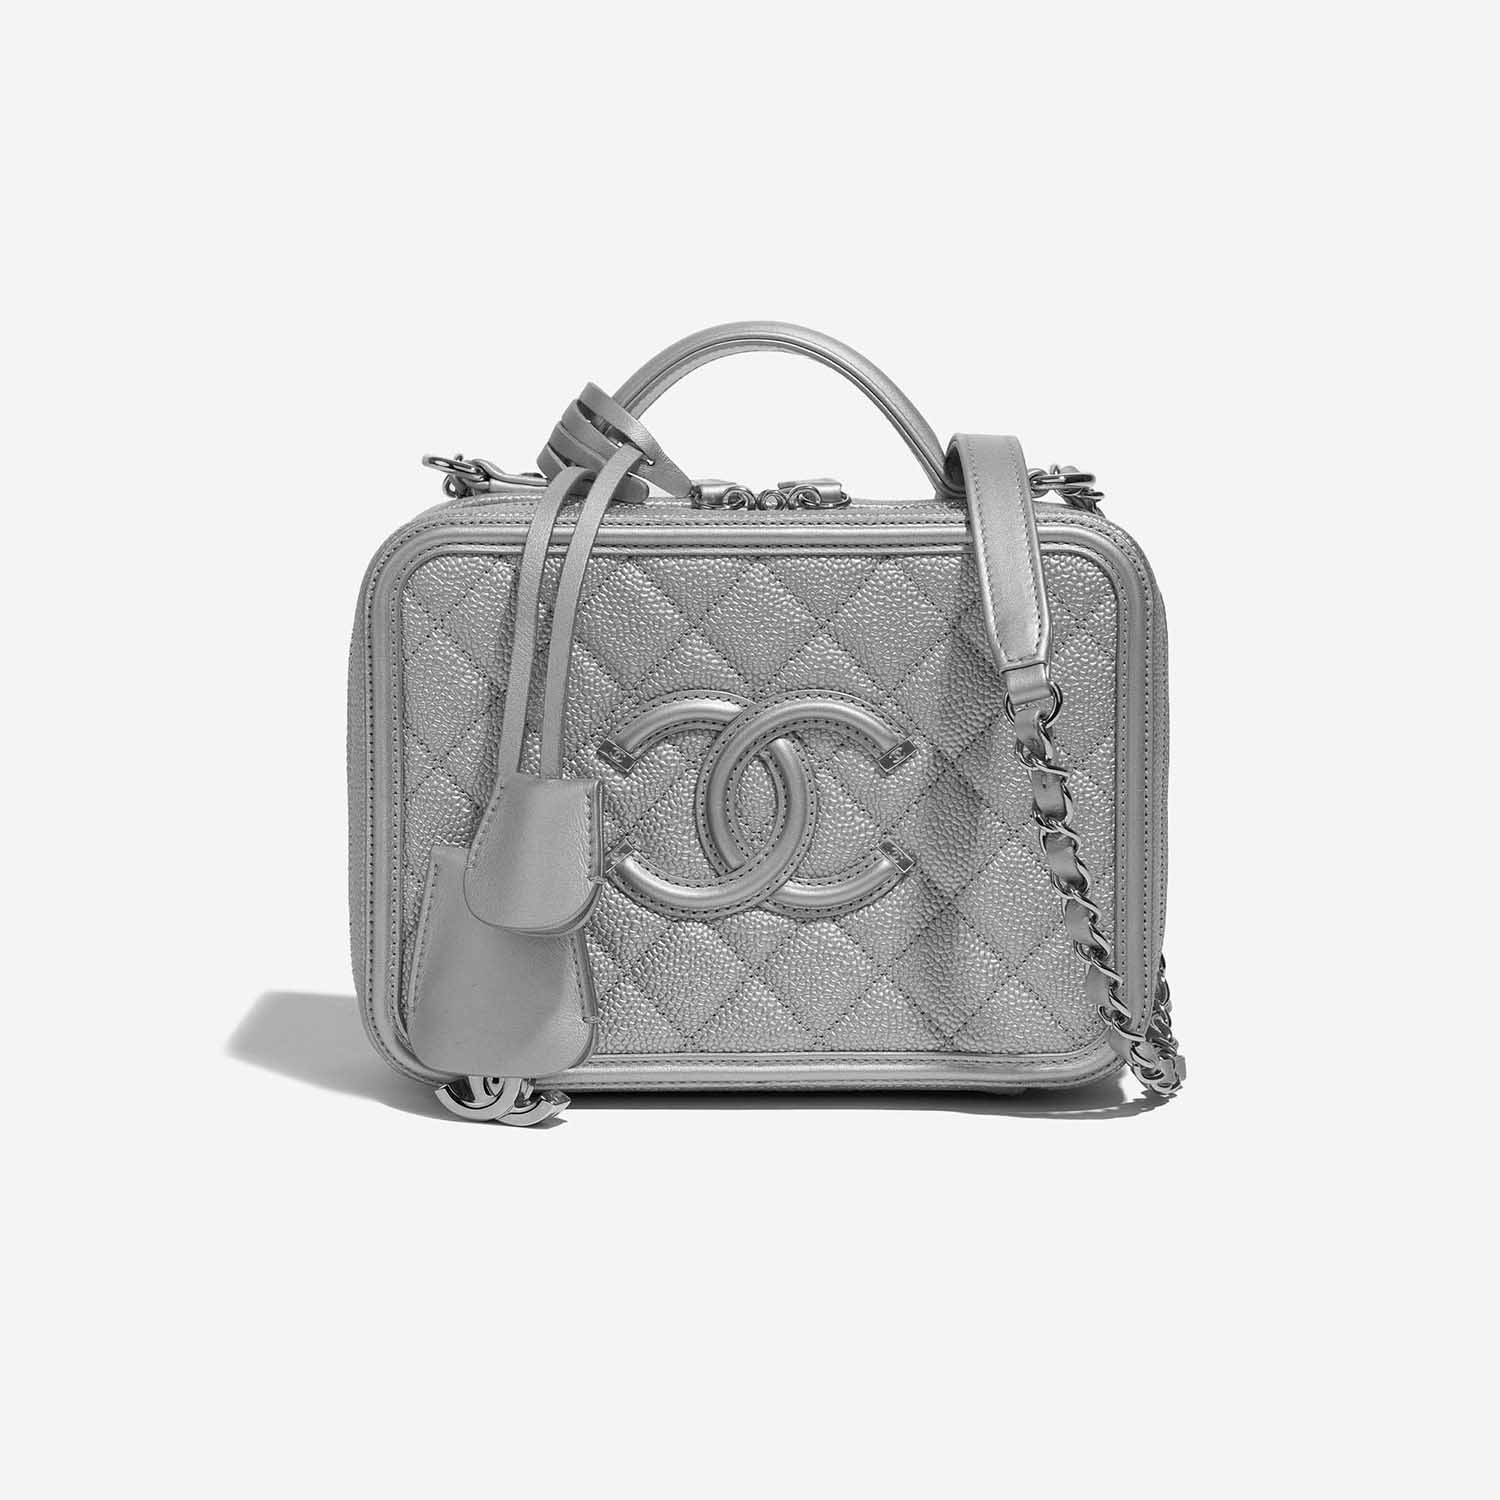 Sac Chanel d'occasion Vanity Case Medium Caviar Silver Silver Front | Vendez votre sac de créateur sur Saclab.com